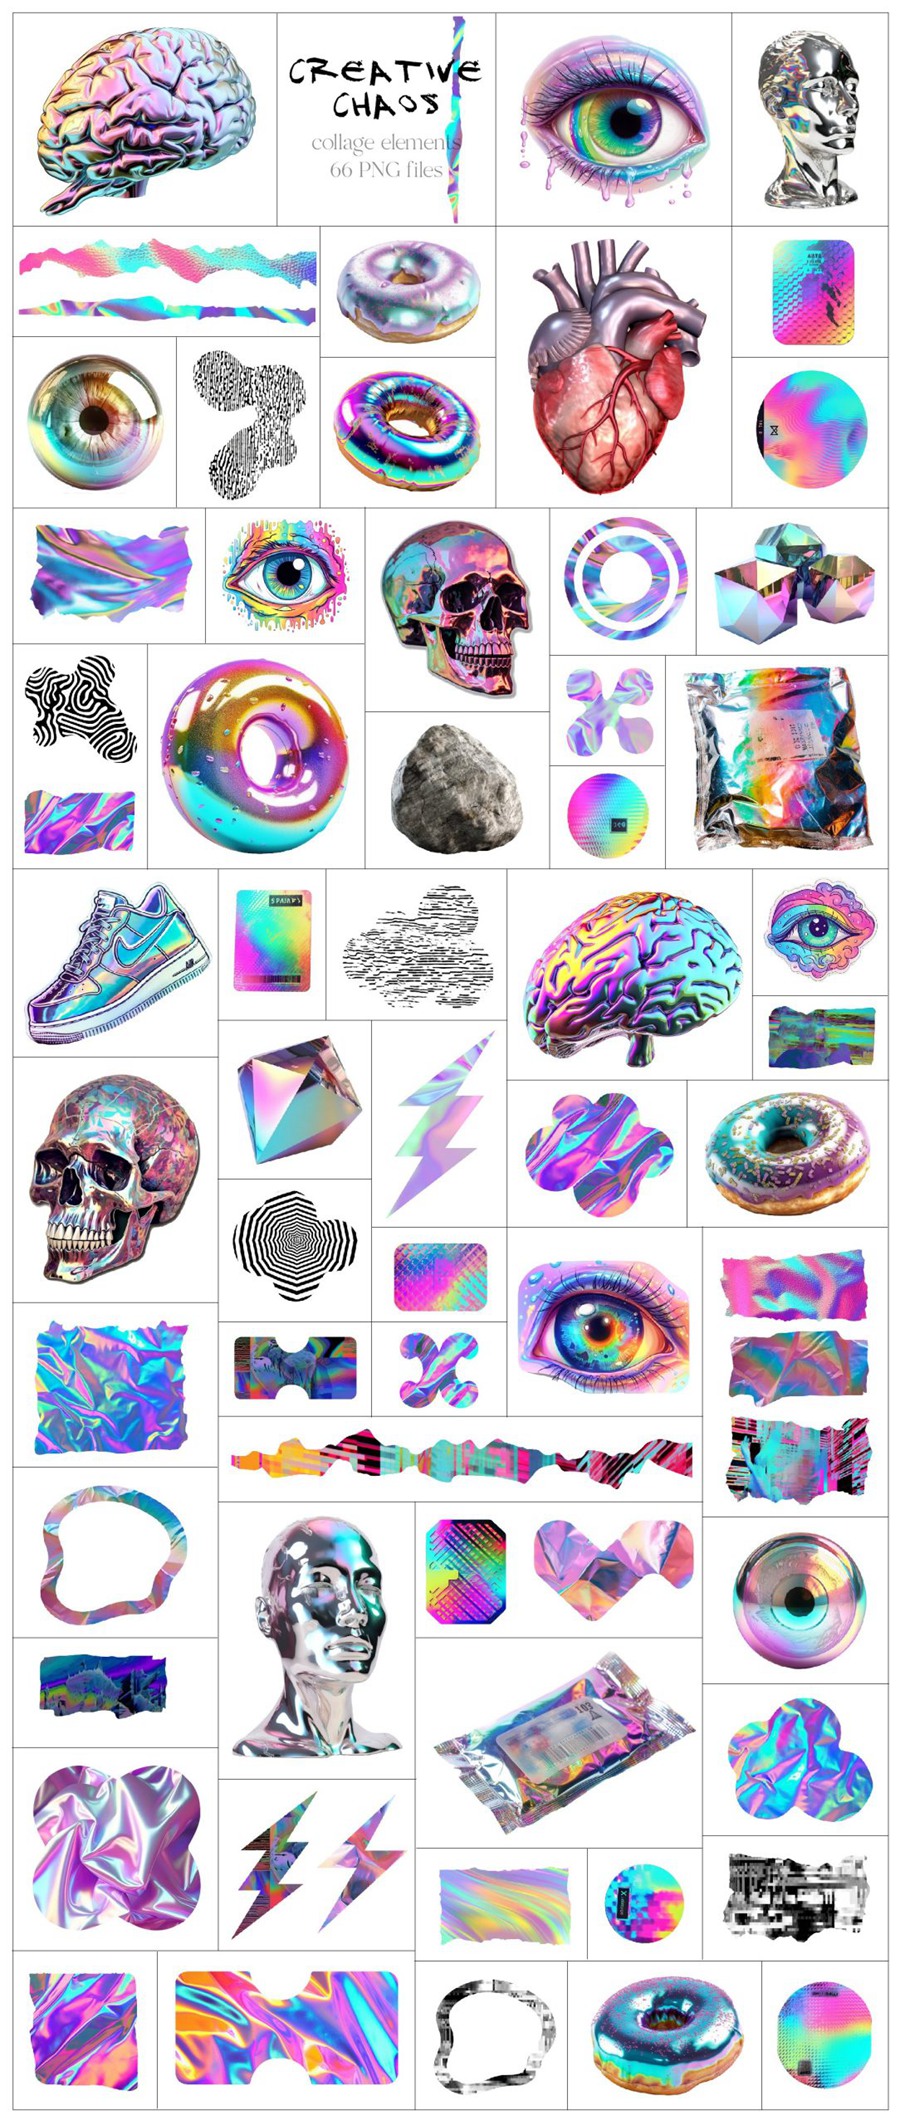 189款3D全息迷幻酸性彩虹色拼贴艺术剪贴画现代极简主义服装海报印刷品时髦创意图形合集和抽象背景纹理 3D Creative Chaos Graphic set , 第5张